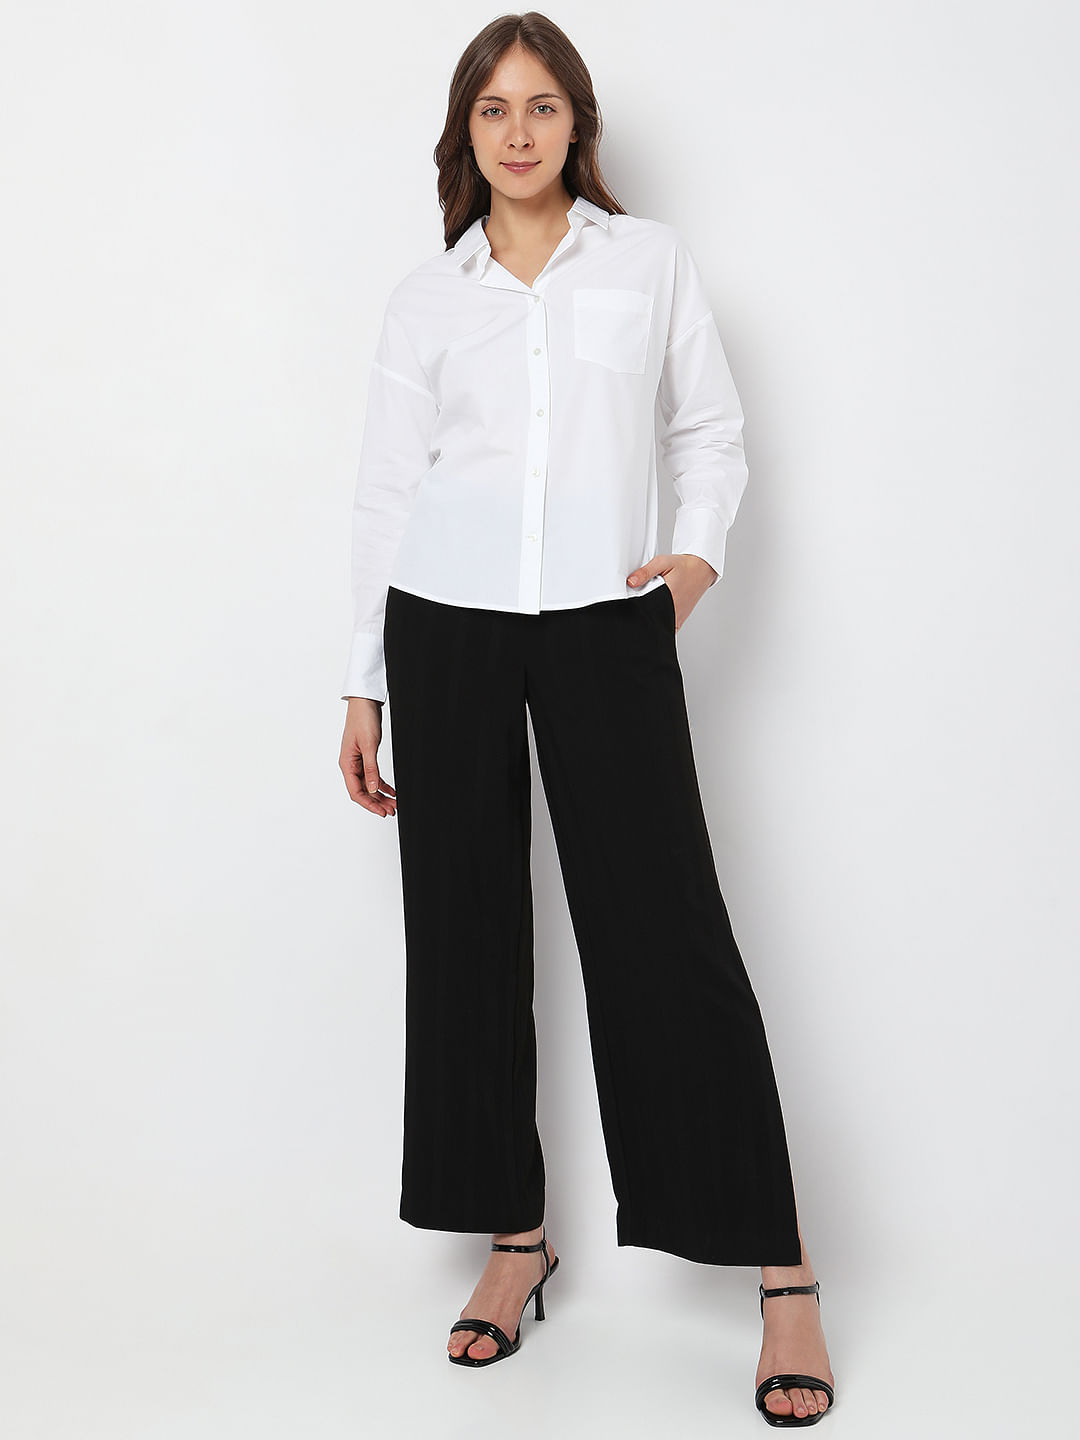 Style Quotient Women Solid White Polycotton Formal Shirt – ELEZIO